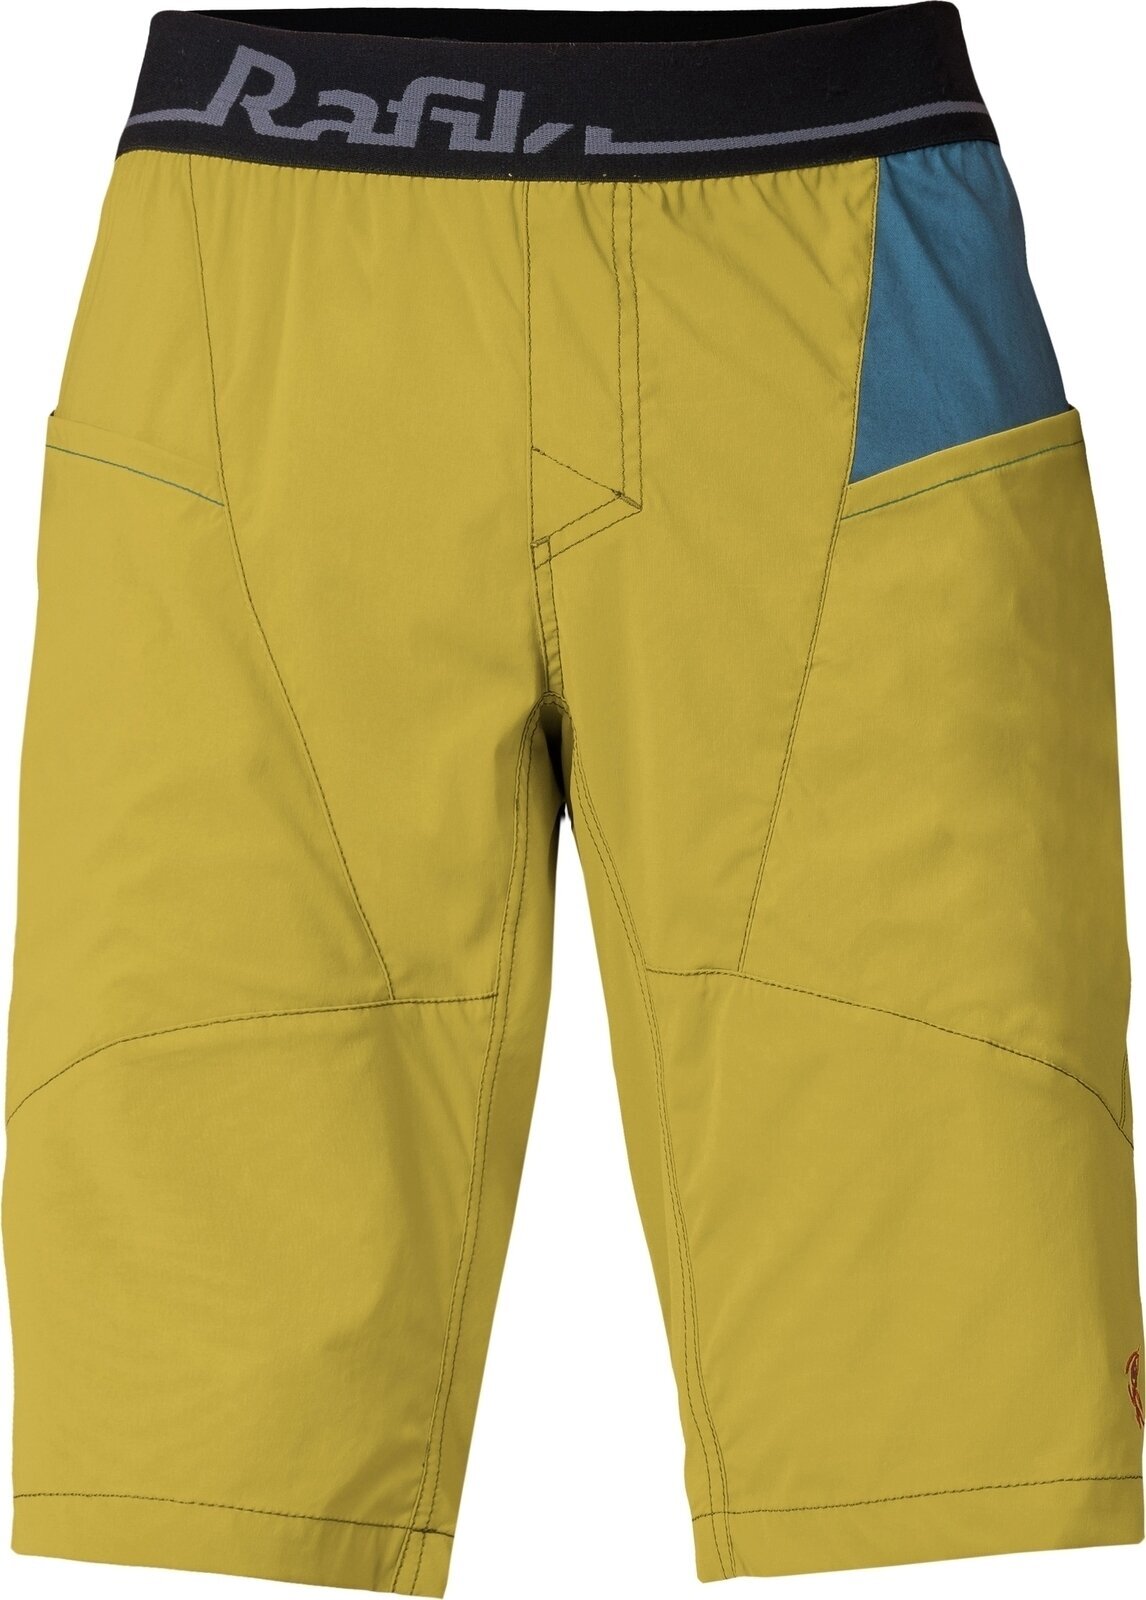 Outdoorové šortky Rafiki Megos Man Shorts Cress Green/Stargazer M Outdoorové šortky